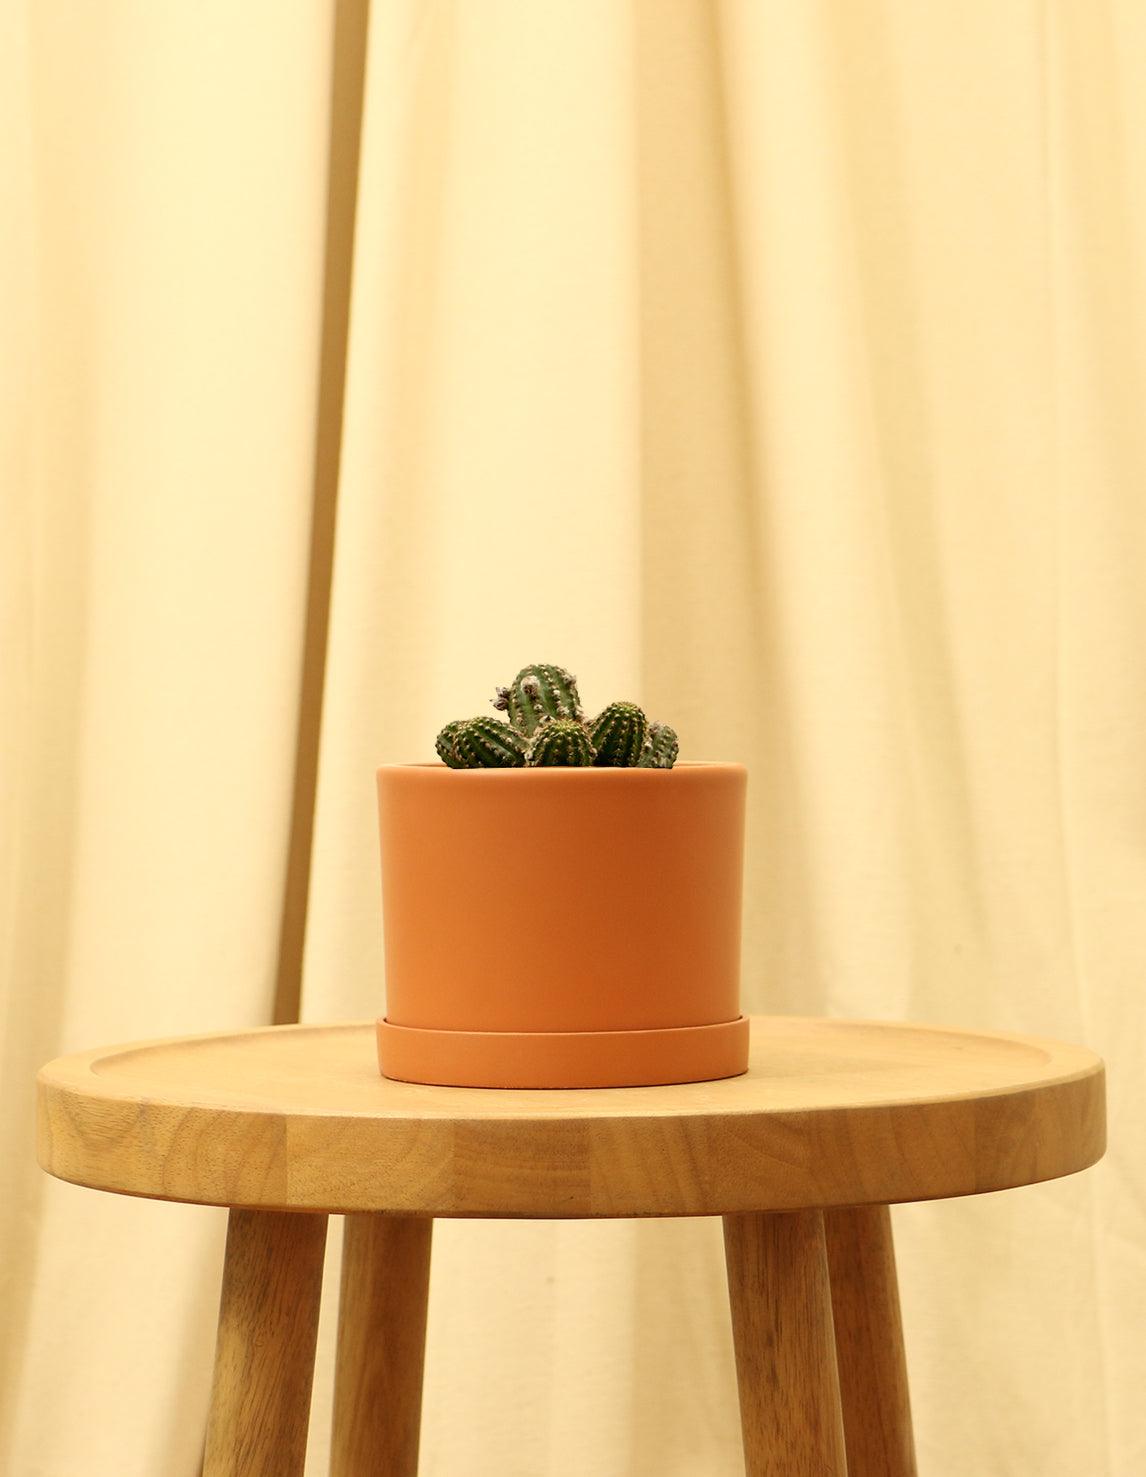 Small Rose Quartz Cactus in orange pot.